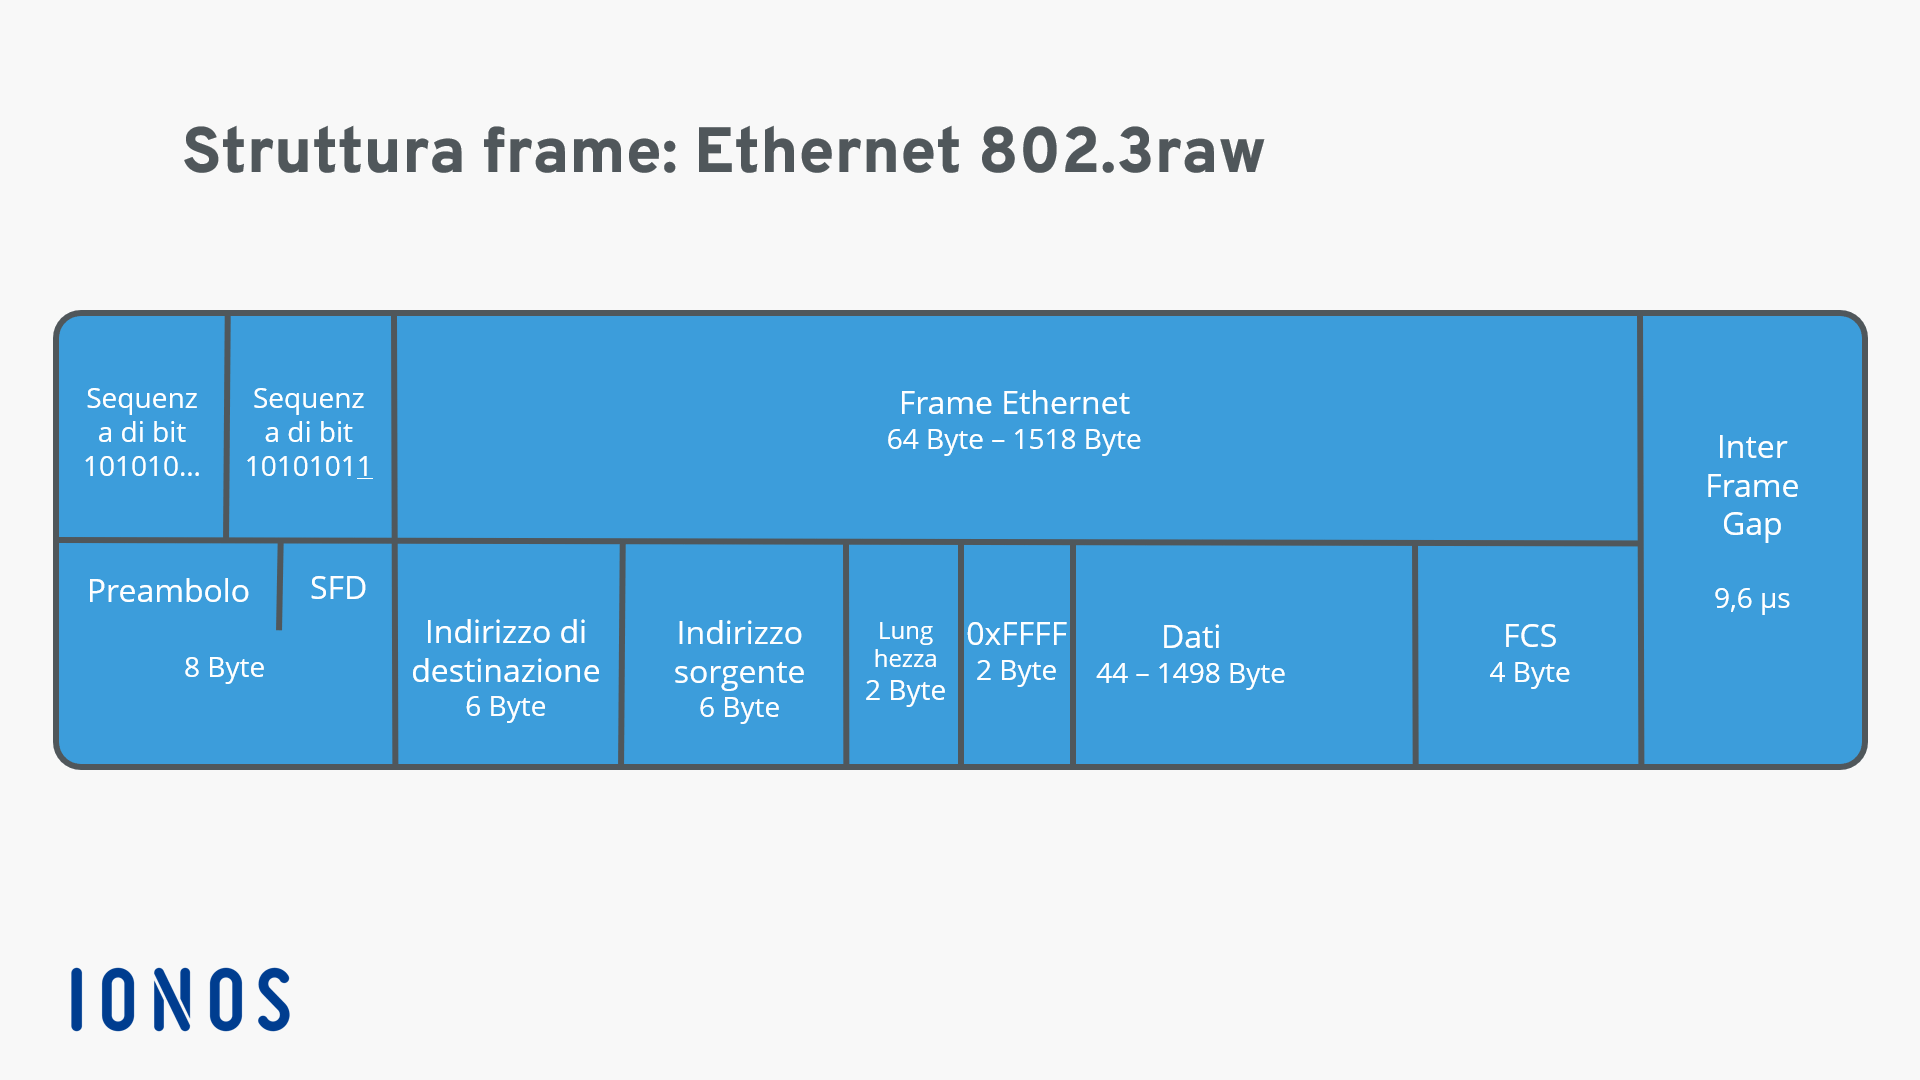 Rappresentazione di una struttura frame Ethernet 802.3raw